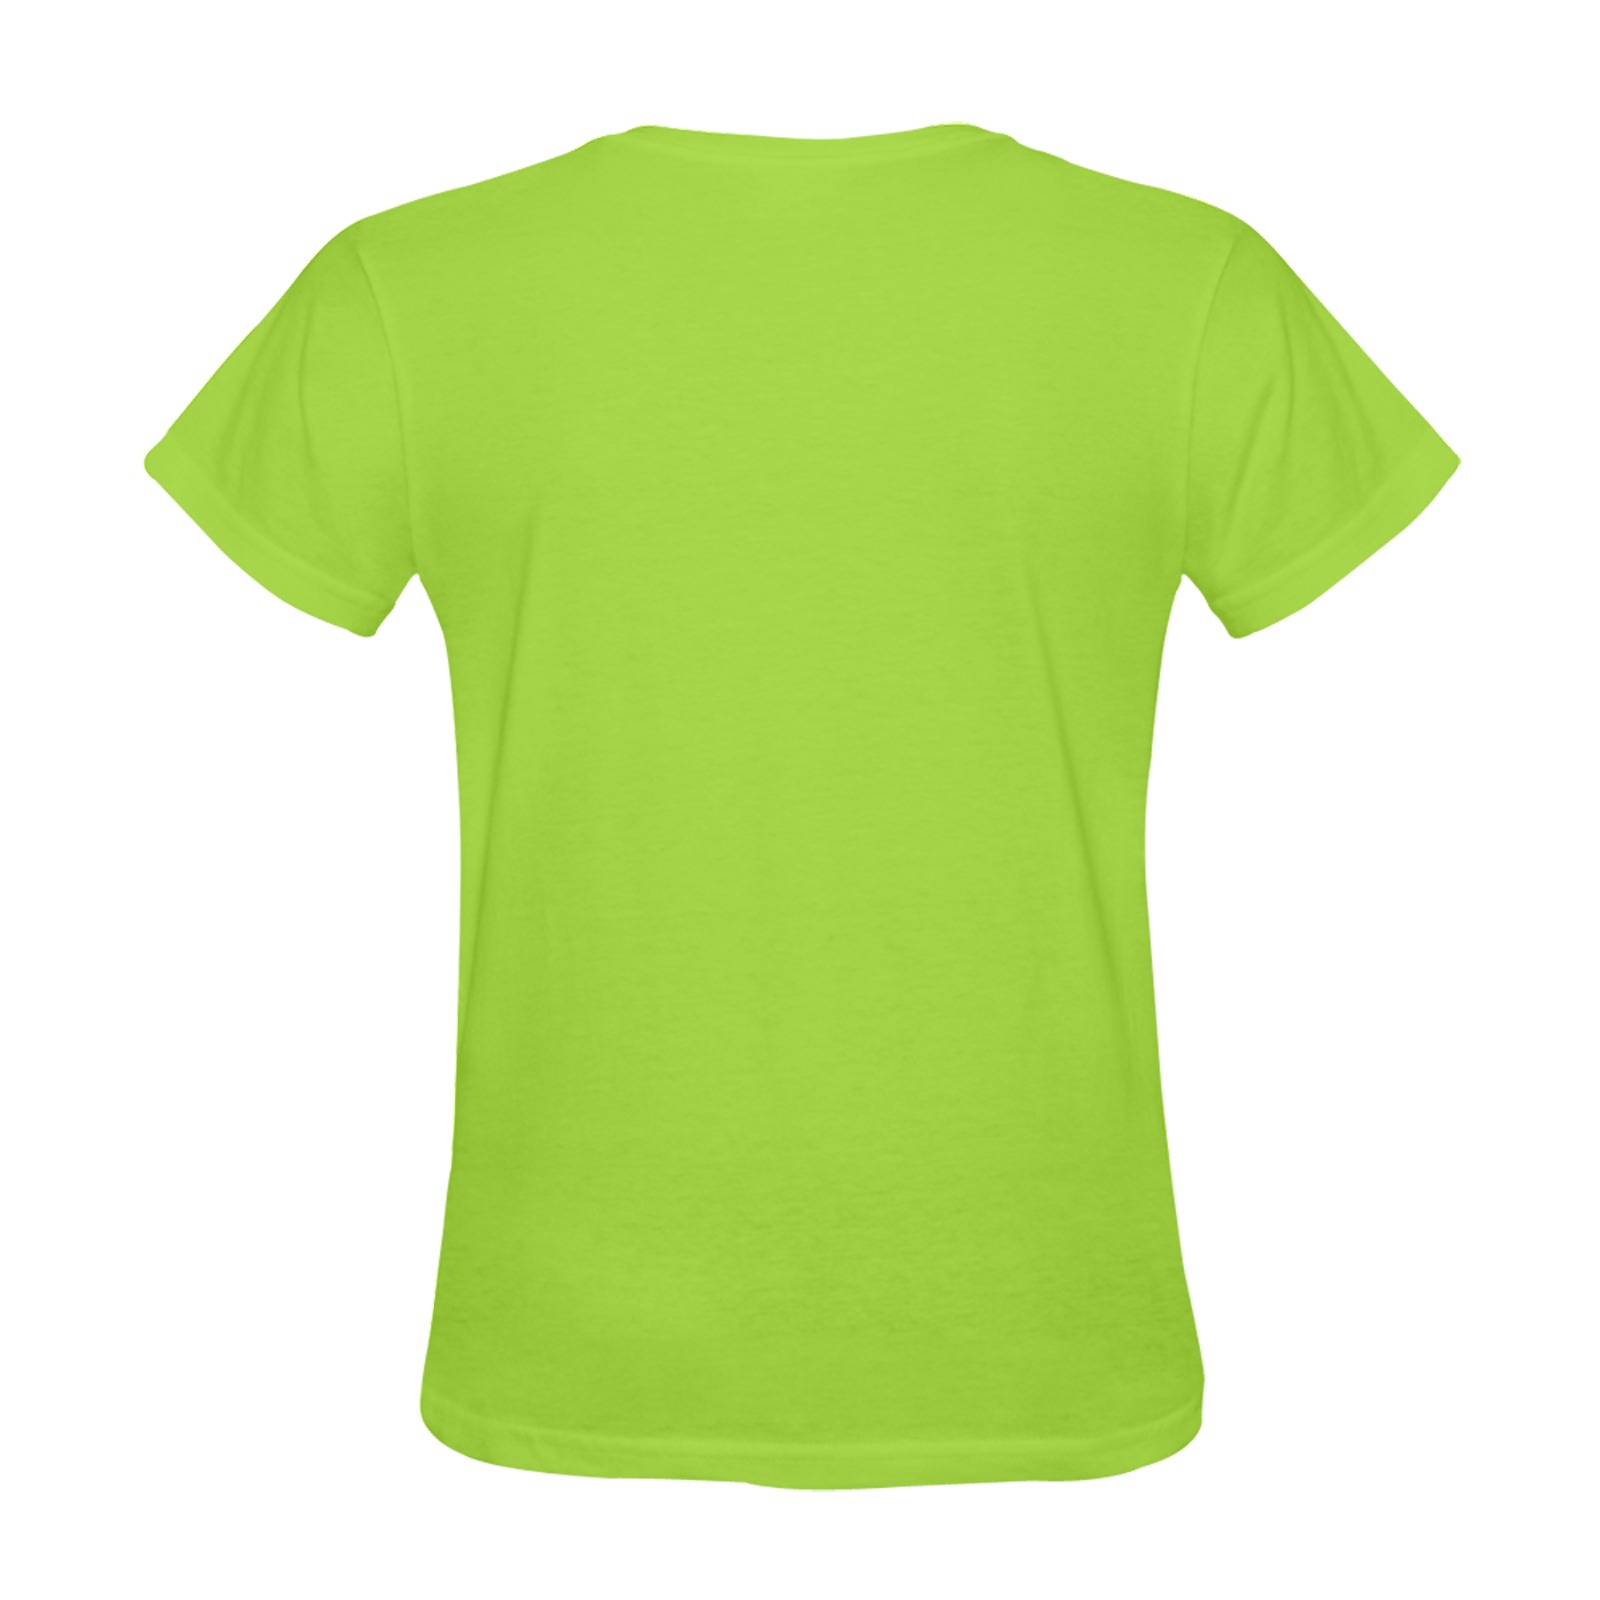 Eat Drink Dance Breakdance Green Sunny Women's T-shirt (Model T05)